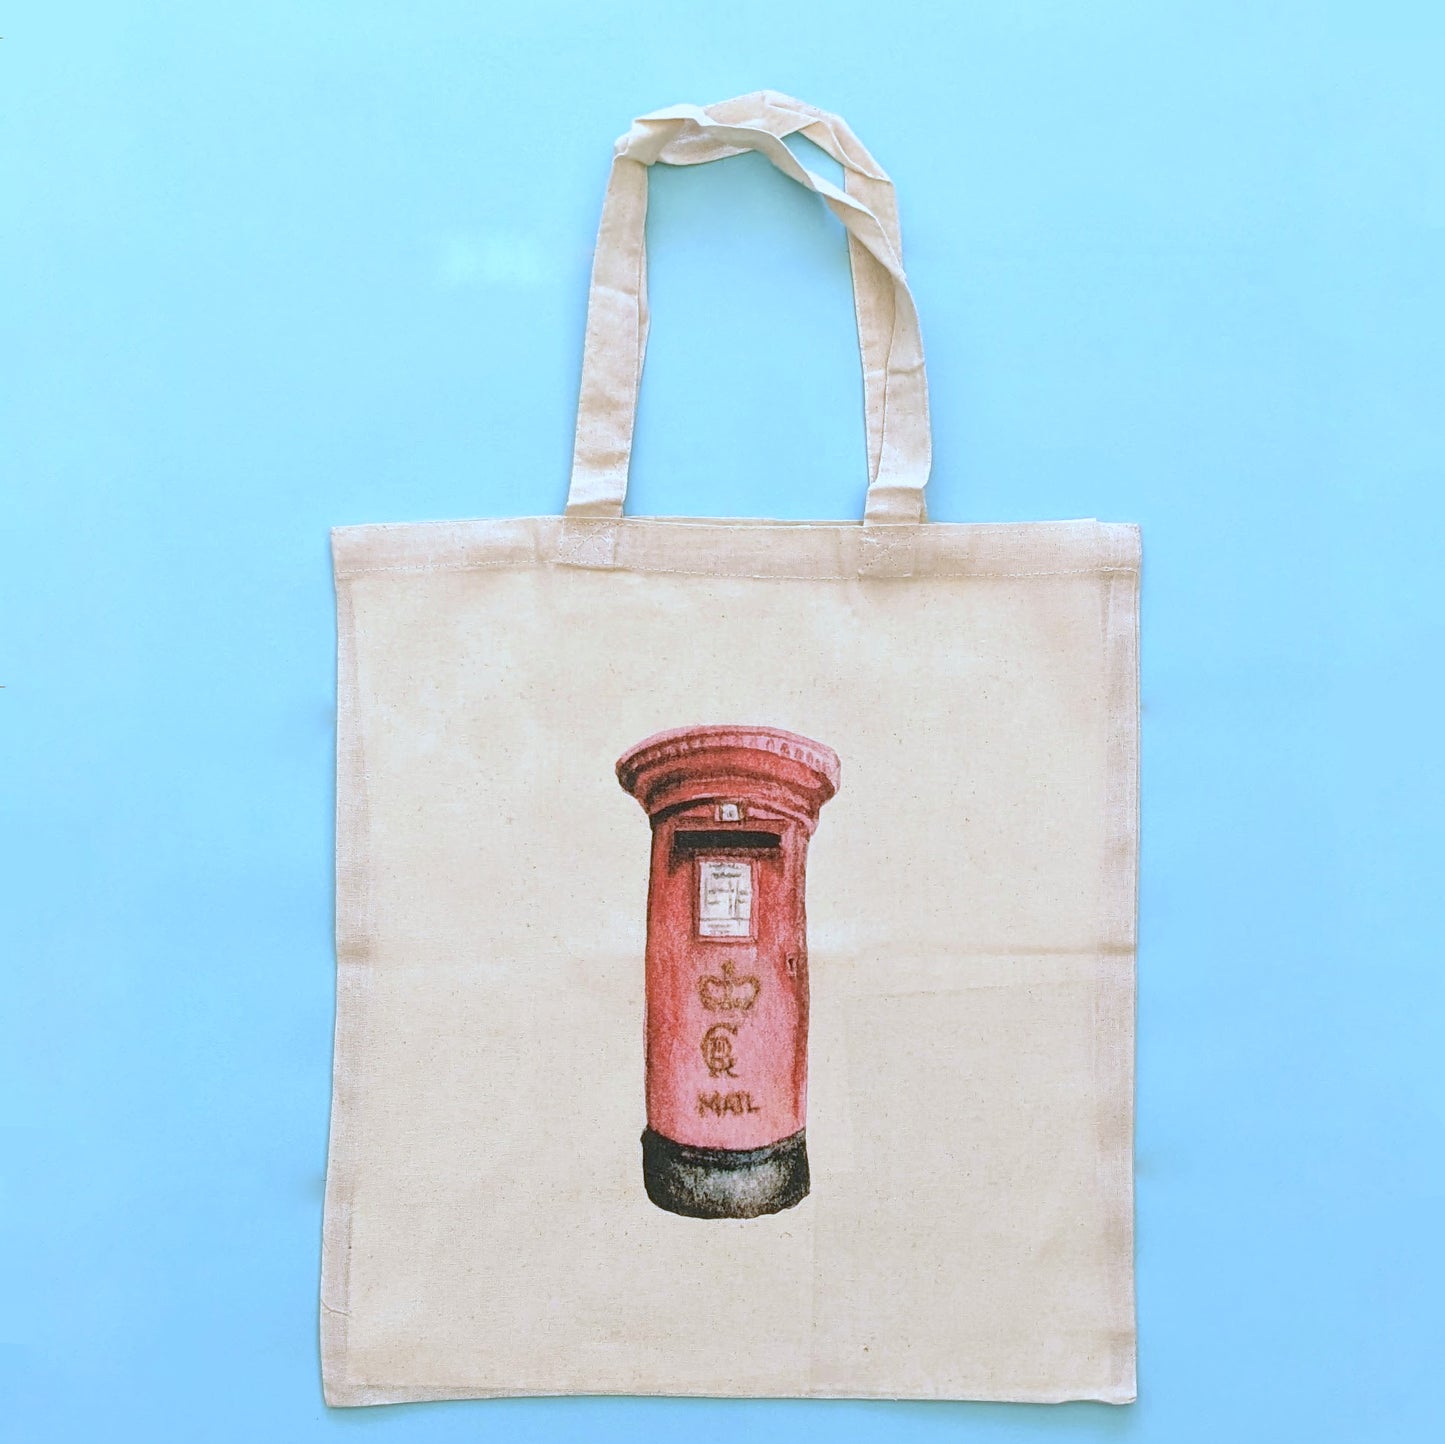 British "Post Box" Tote Bag